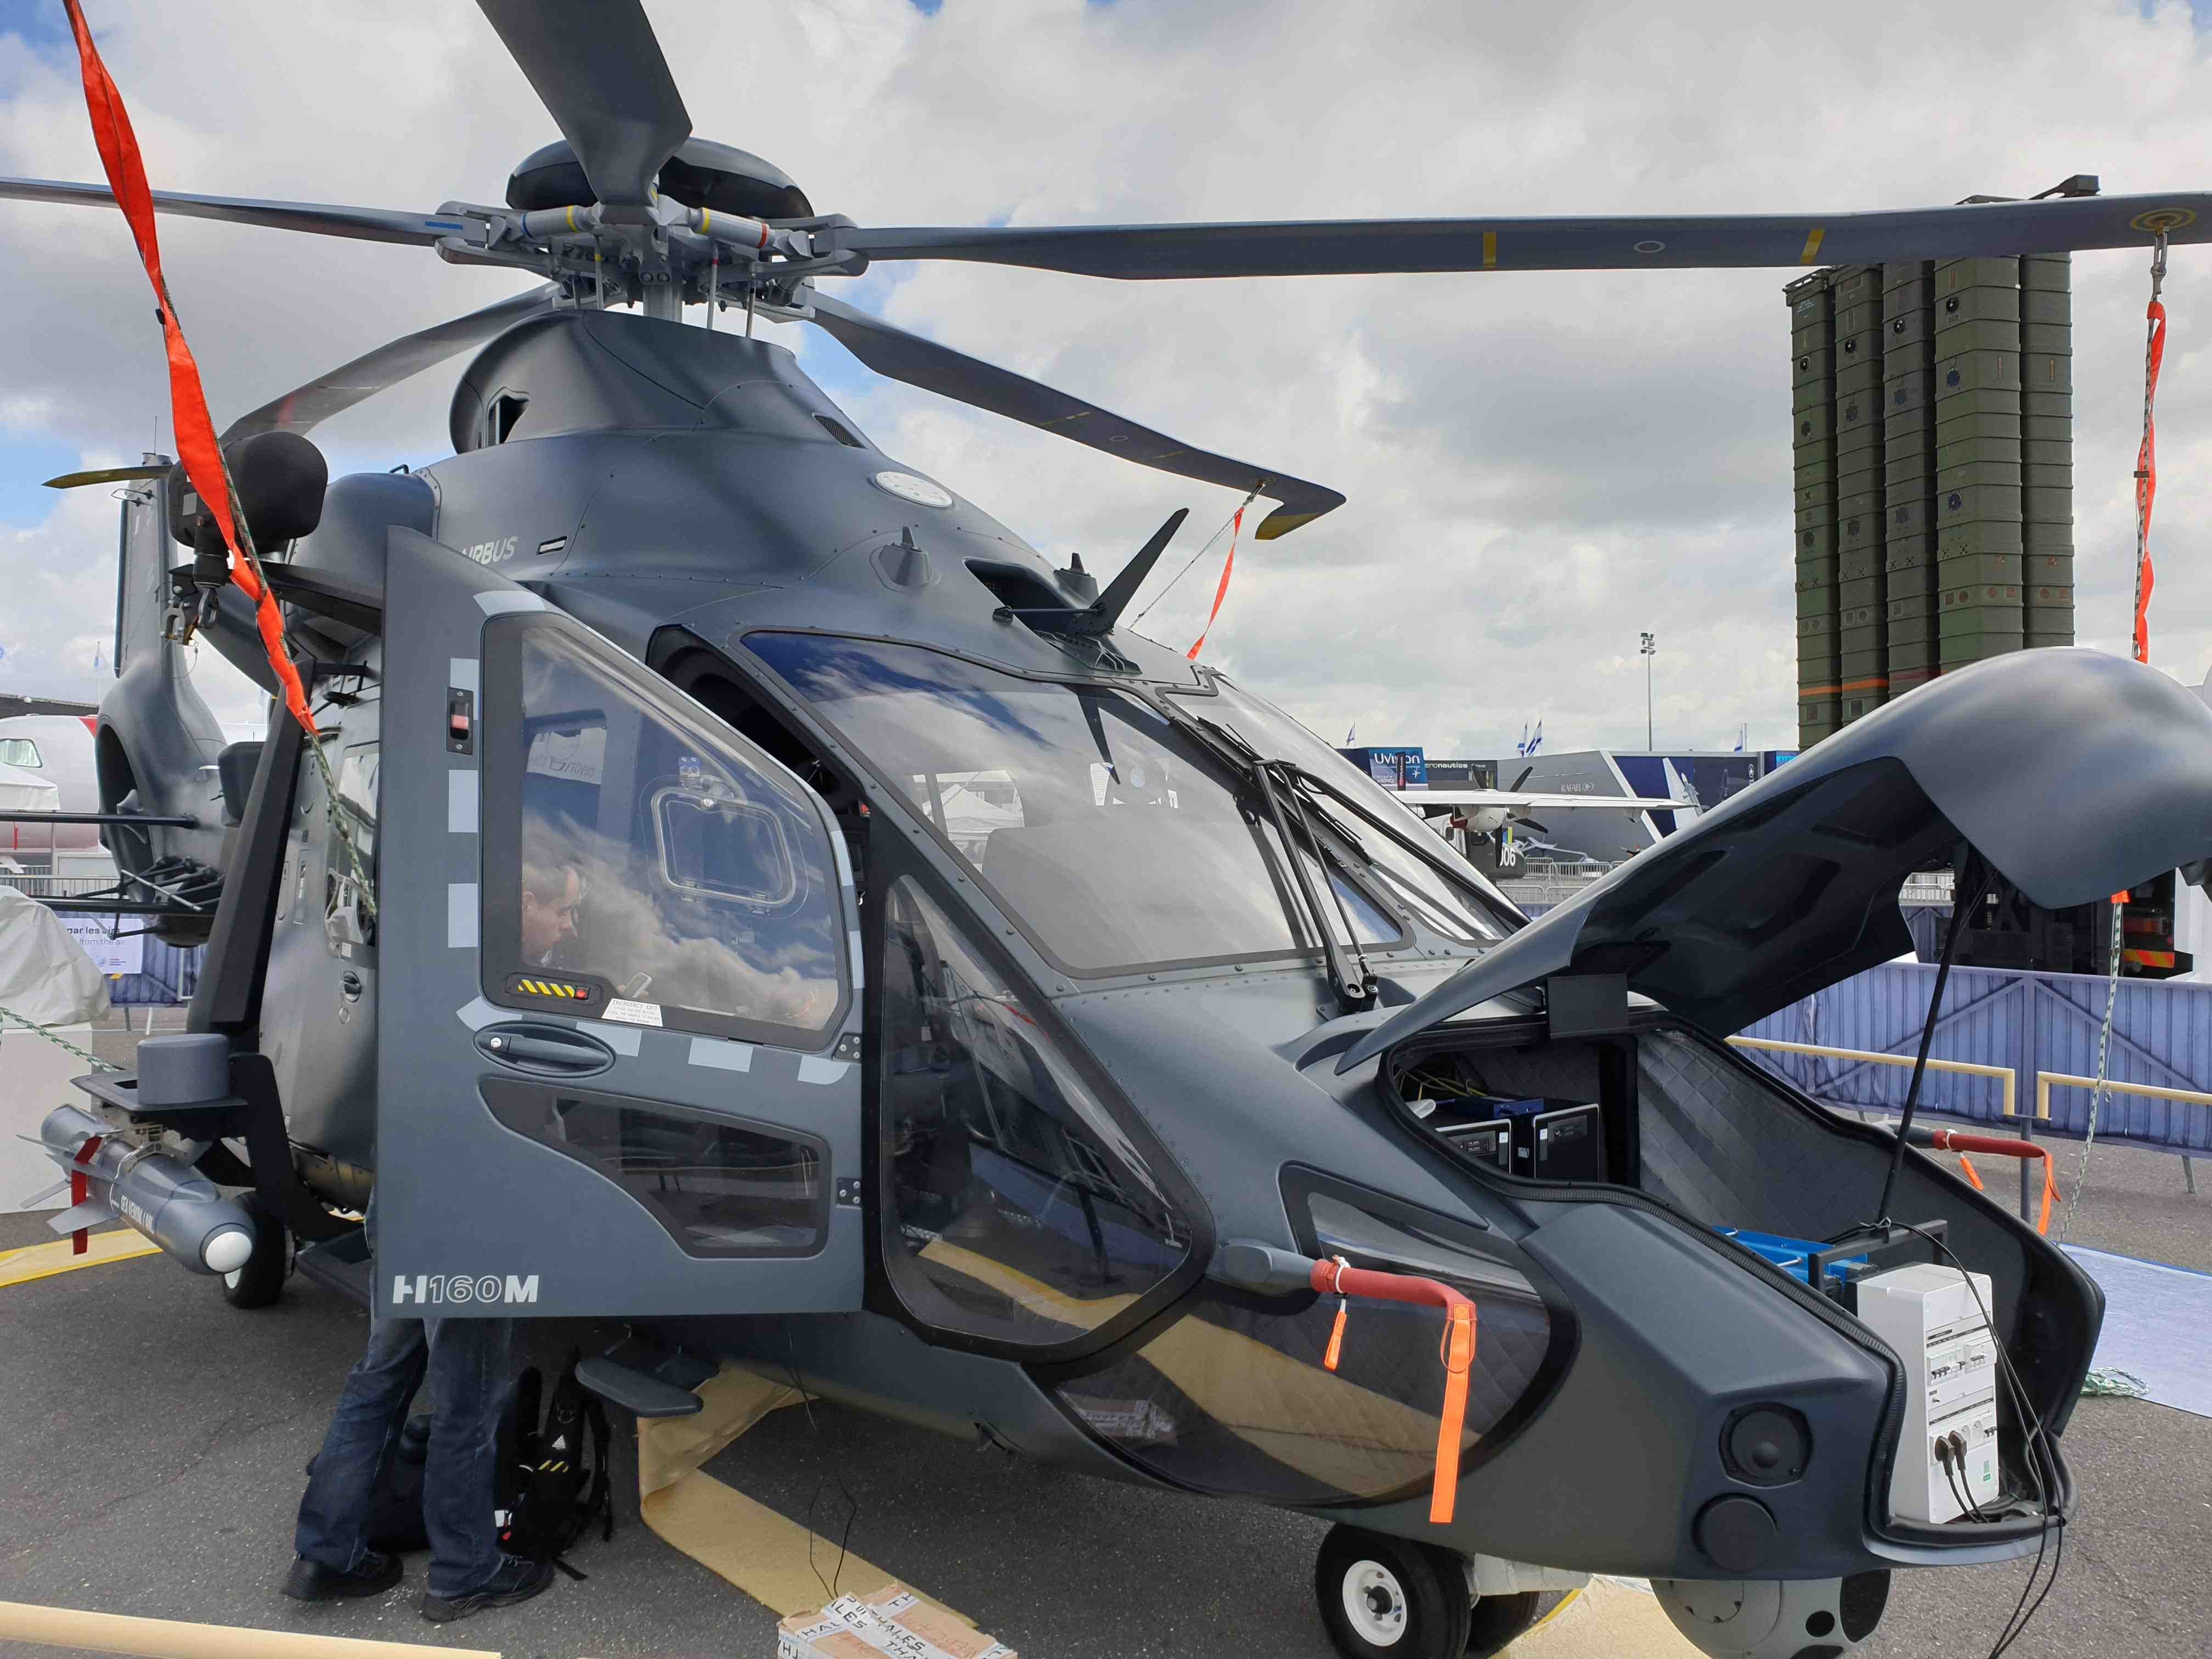 Новые вертолеты россии. Вертолет Аэробус h160. Airbus Helicopters h160 салон. Вертолет Airbus Helicopters h160 военный. Вертолет Airbus Helicopters h160 private.